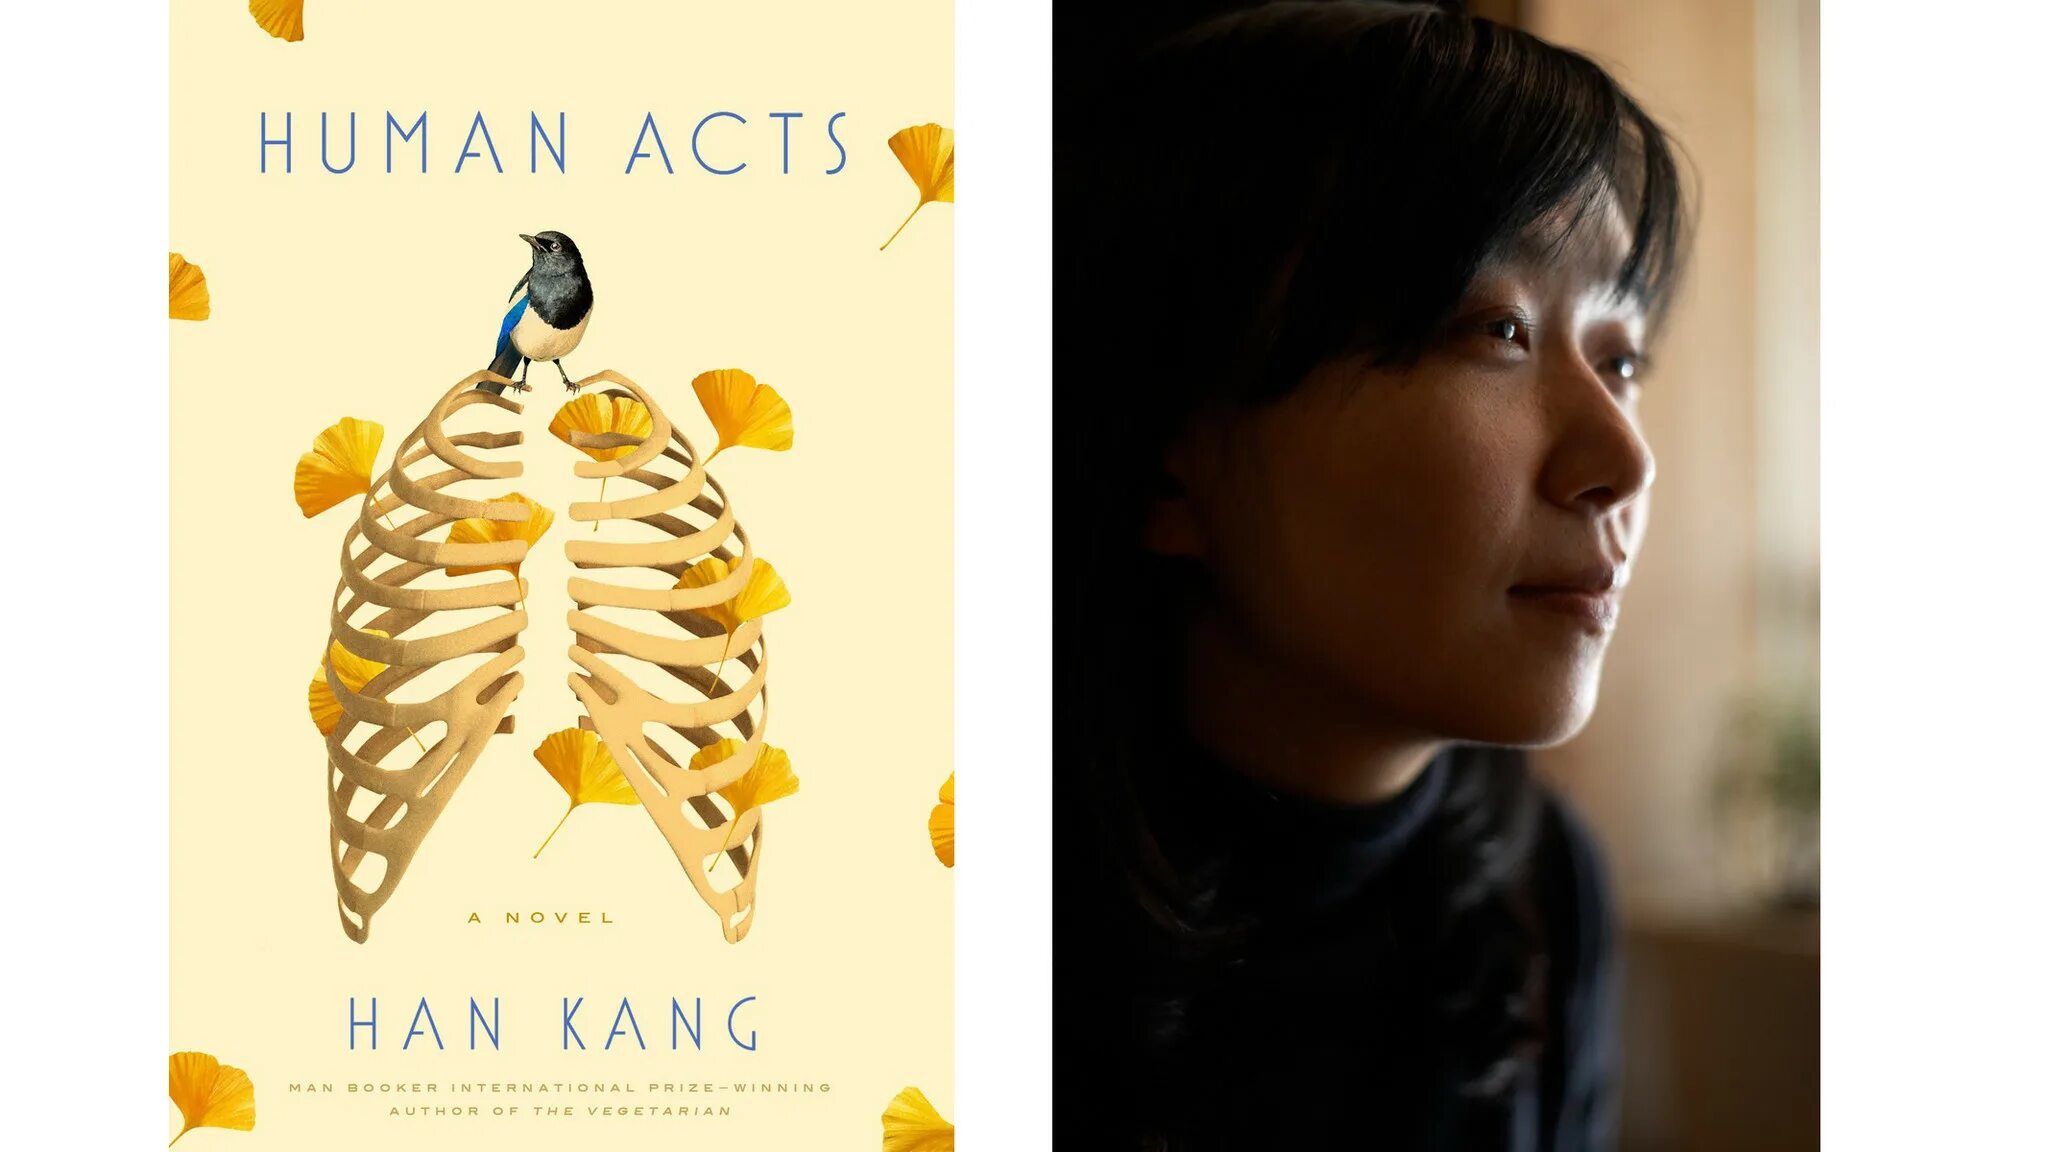 Kang Han "Human Acts". Хан Ган "вегетарианка". Вегетарианка книга. Хан Ган вегетарианка книга. Human acts